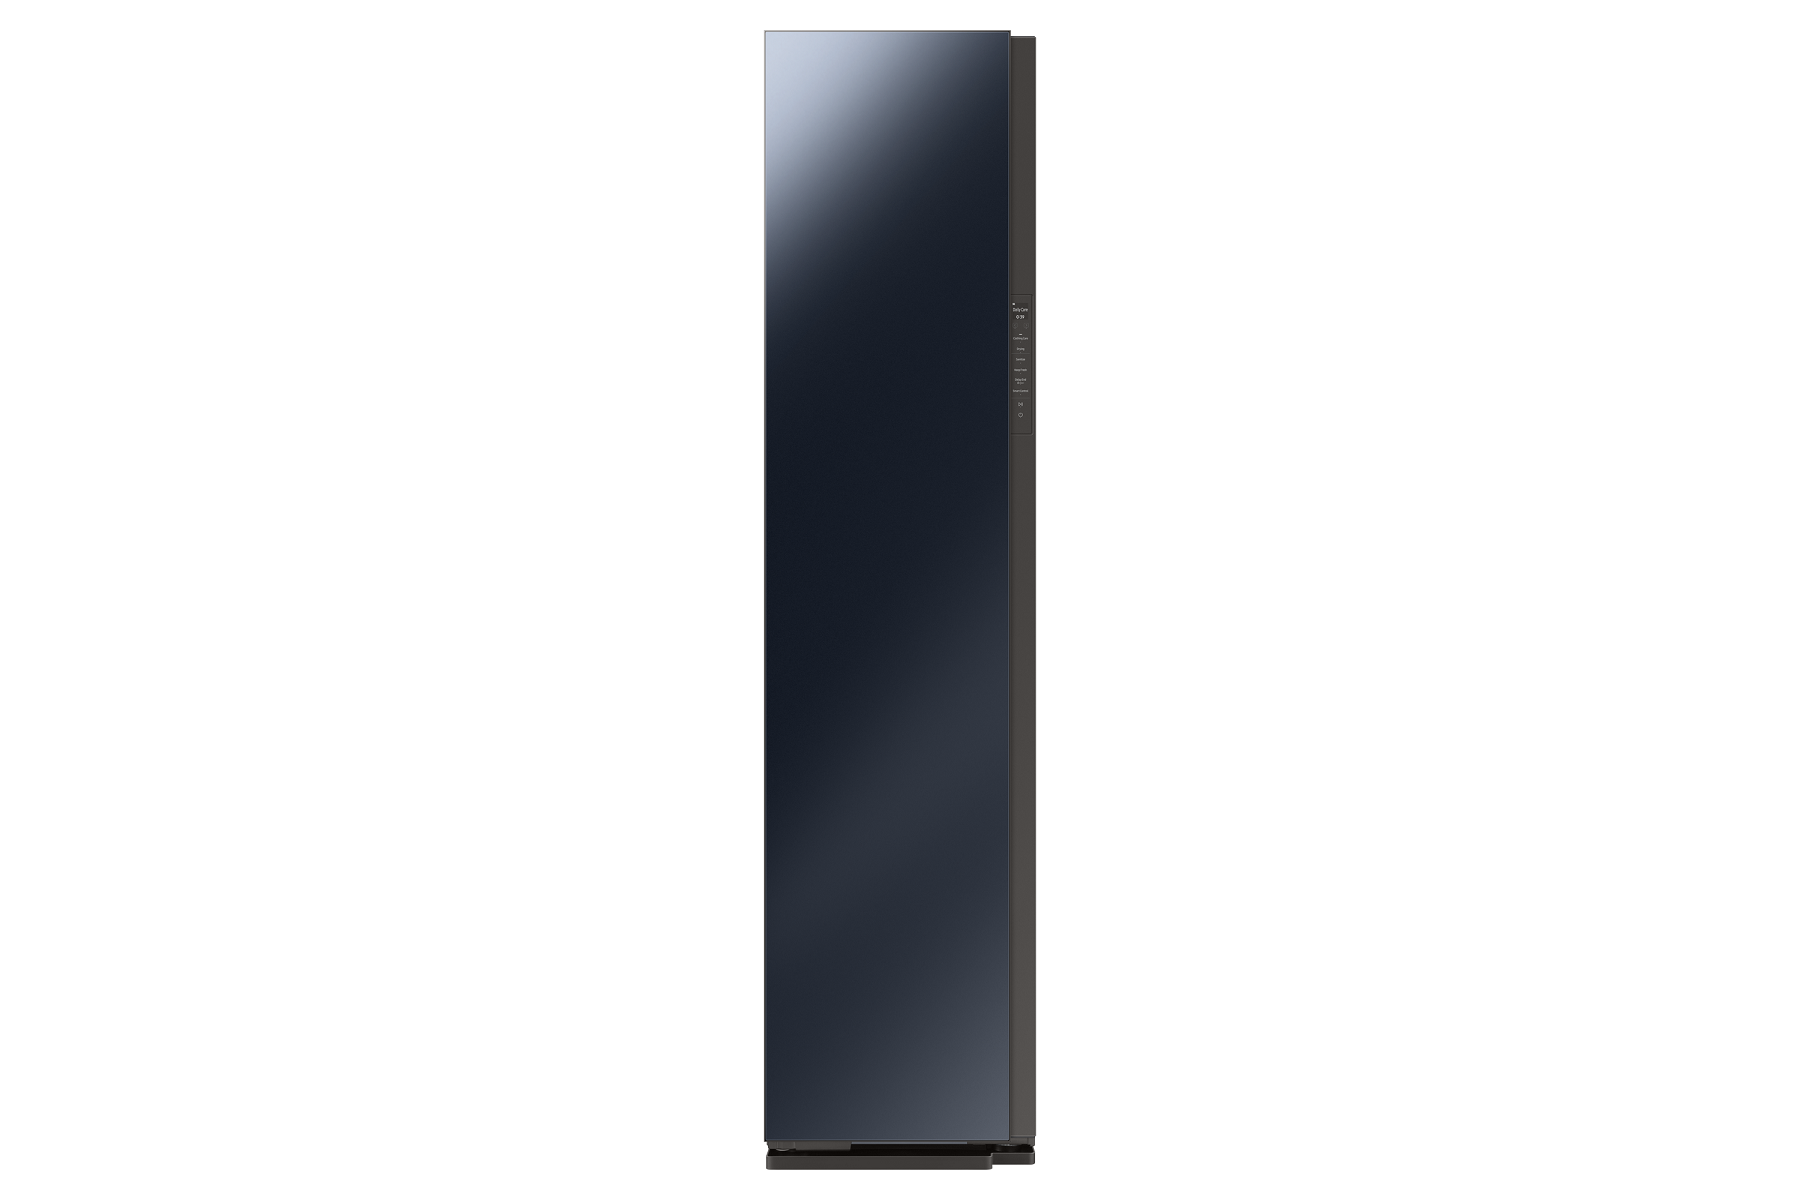 Паровой шкаф Samsung DF60A8500CG/E2 Black, купить в Москве, цены в интернет-магазинах на Мегамаркет